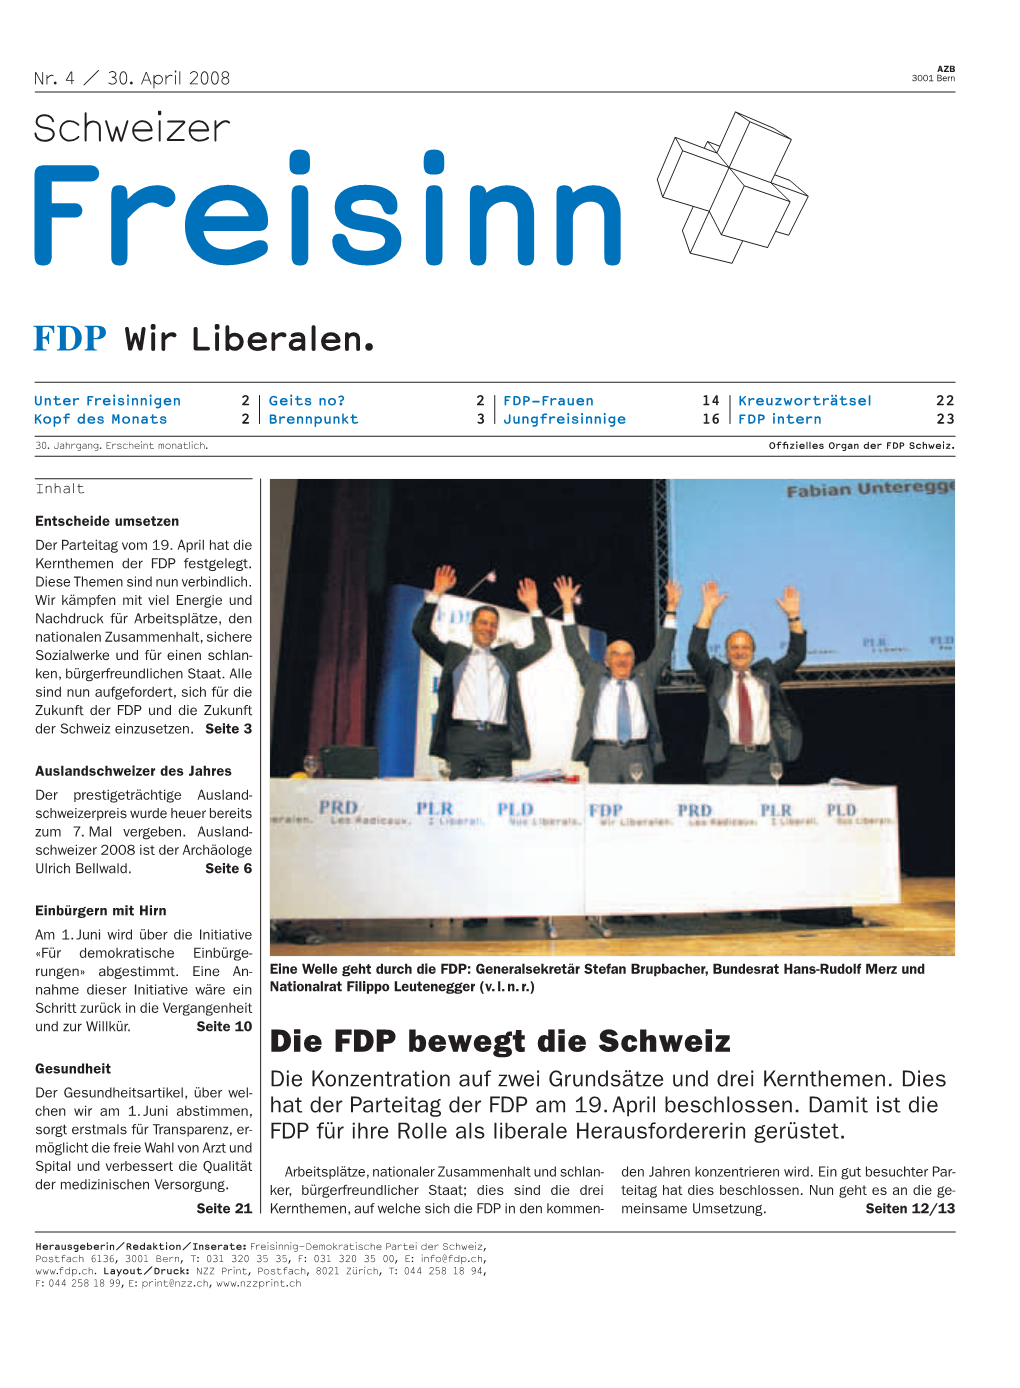 Freisinn FDP Wir Liberalen